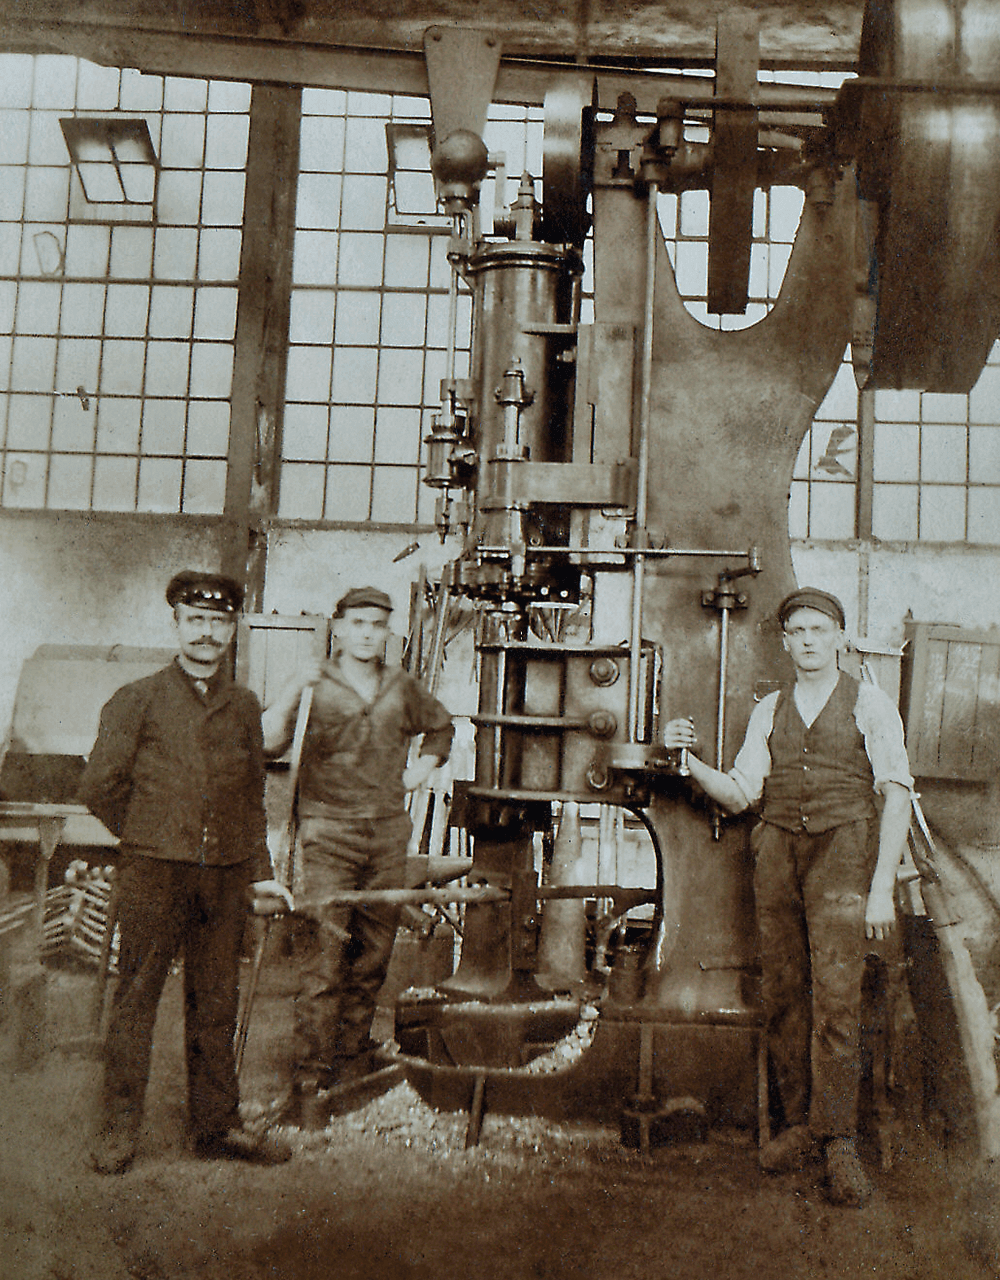 Oude foto van drie medewerkers van AERZEN voor een AERZEN-unit